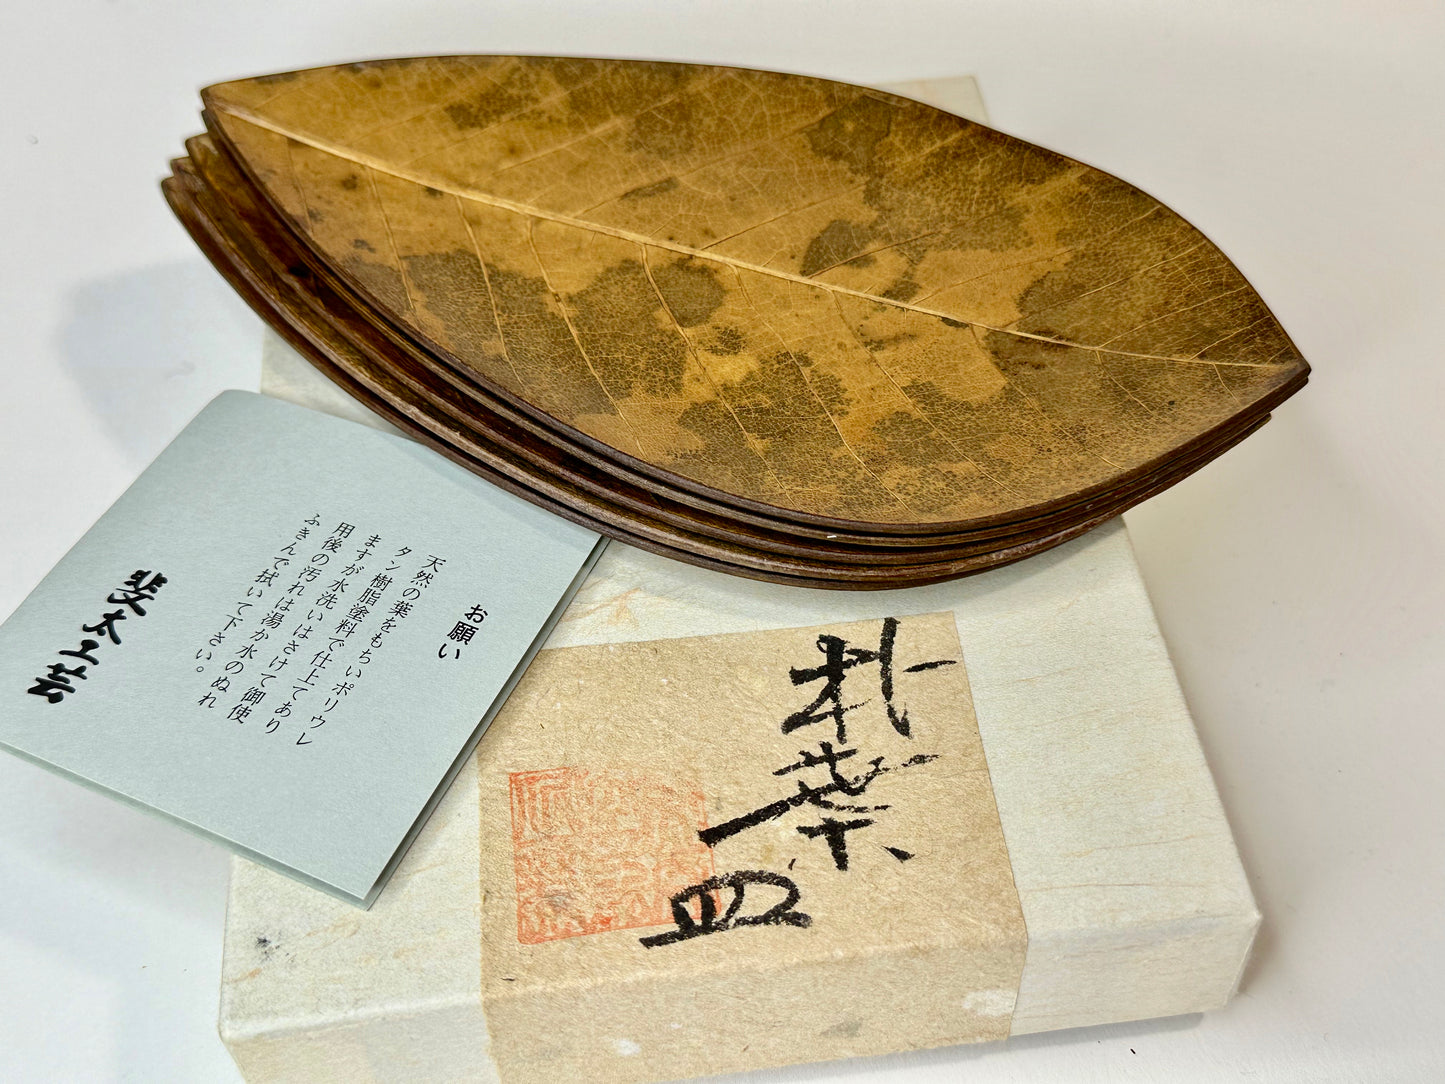 Vintage Japanese Set of 5 Plates Kashizara Sushi Dish Magnolia Leaf 7"